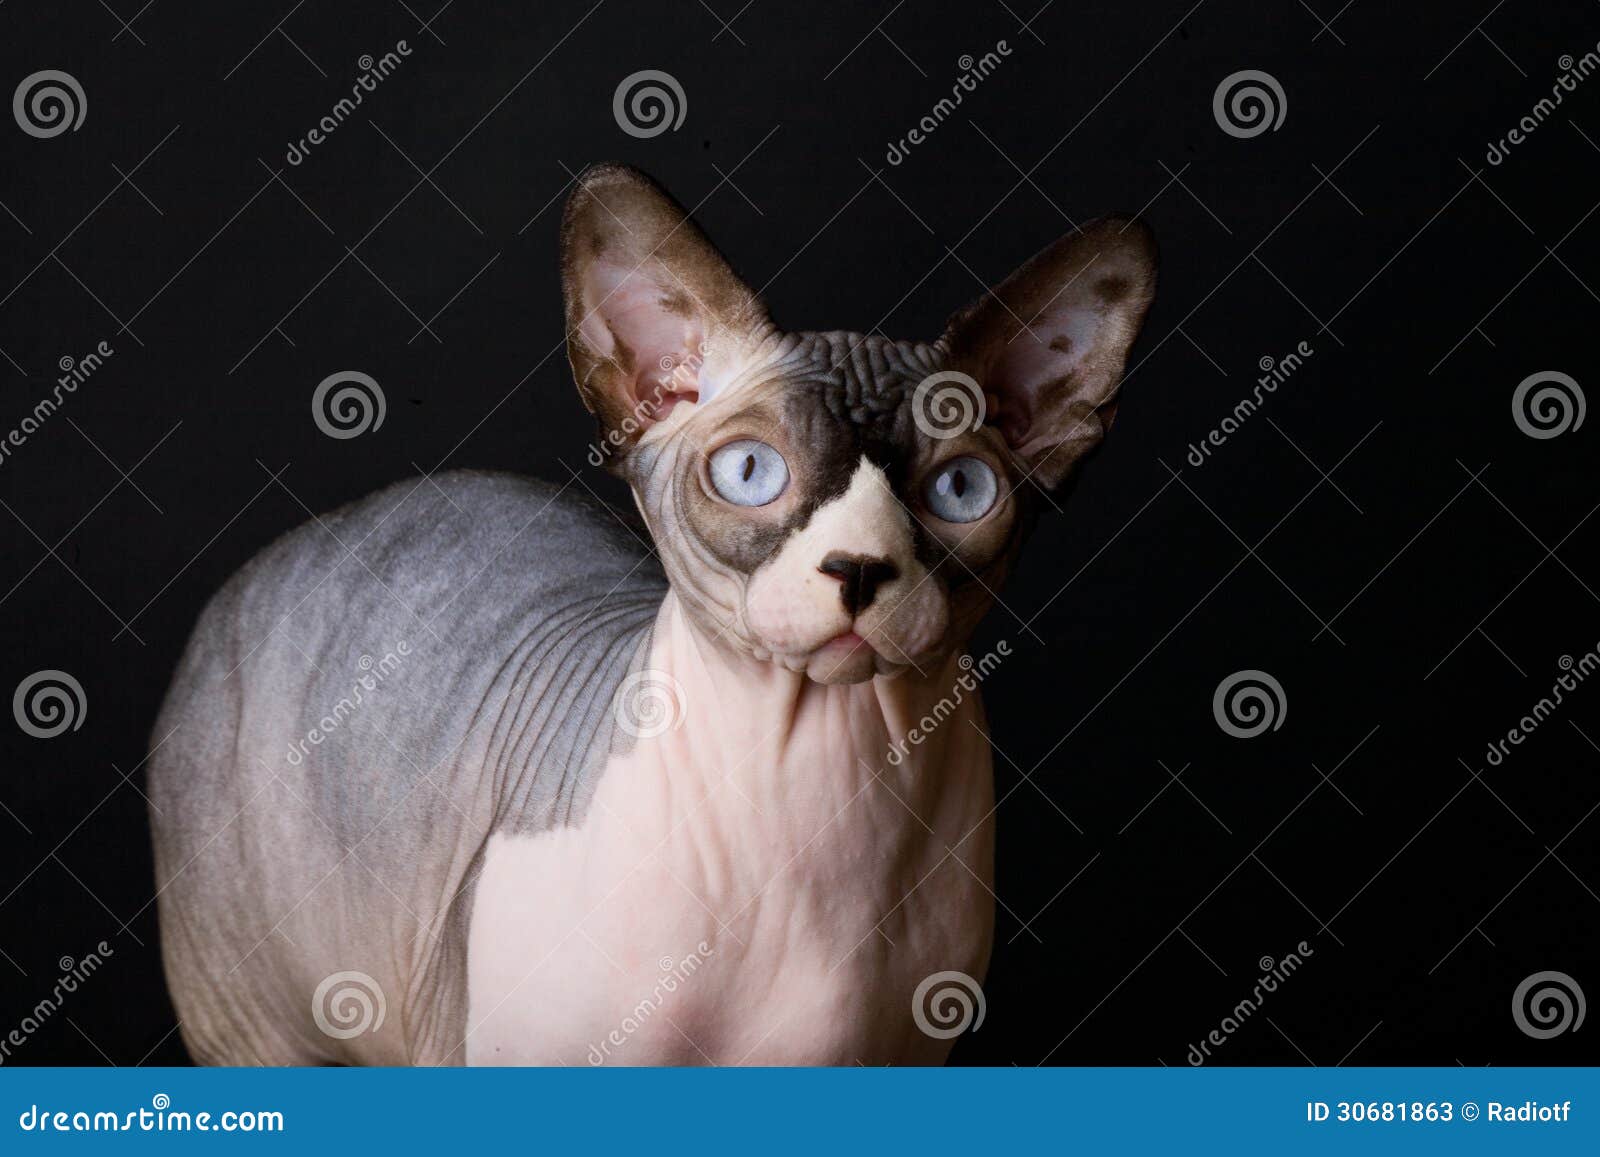 Γάτα Sphynx. Φαλακρή γάτα. Αιγυπτιακή γάτα. Στη φυλή Sphynx γατών φωτογραφιών. καλούνται τις άτριχες γάτες ή αιγυπτιακές γάτες. Εικόνα που λαμβάνεται στο στούντιο σε ένα σκοτεινό υπόβαθρο